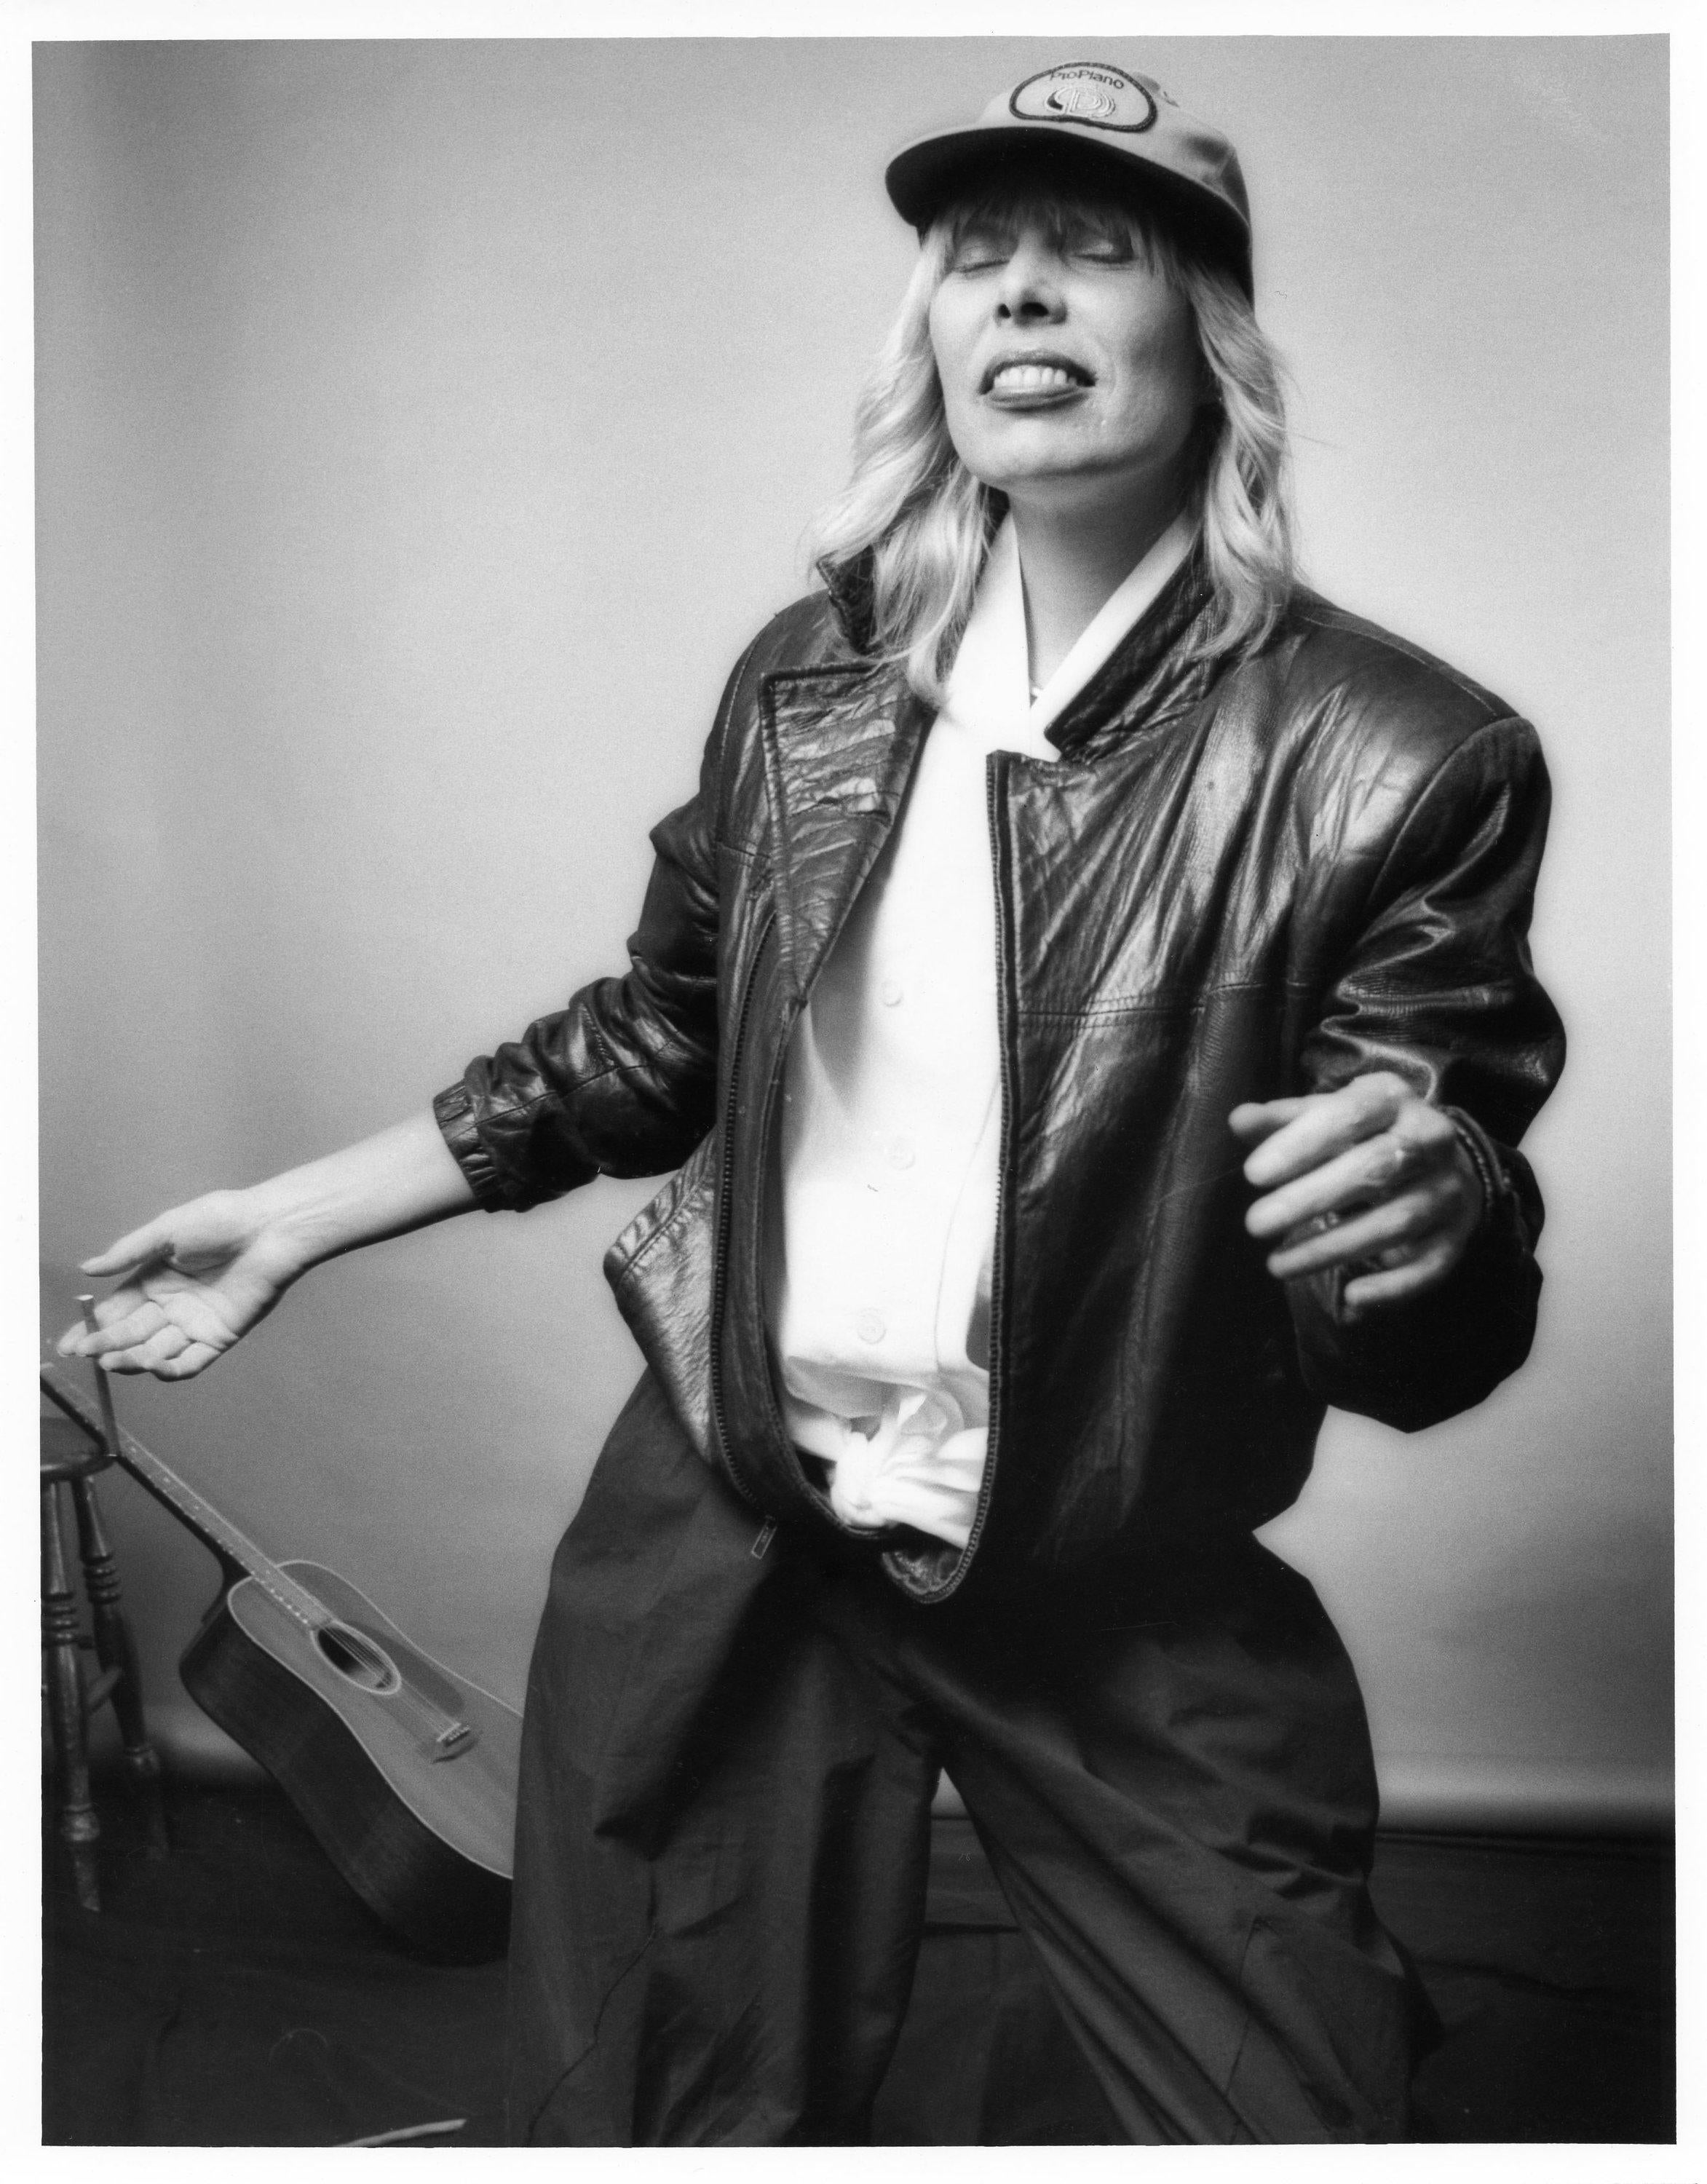 Original Vintage 8x10" Arbeitsdruck von Norman Seeff von Joni Mitchell. Handgedruckt 1983 zur Zeit des Fotoshootings, auf der Rückseite von Norman Seeff signiert und mit seinem Studio-Stempel versehen.

In ausgezeichnetem Zustand, da er flach in